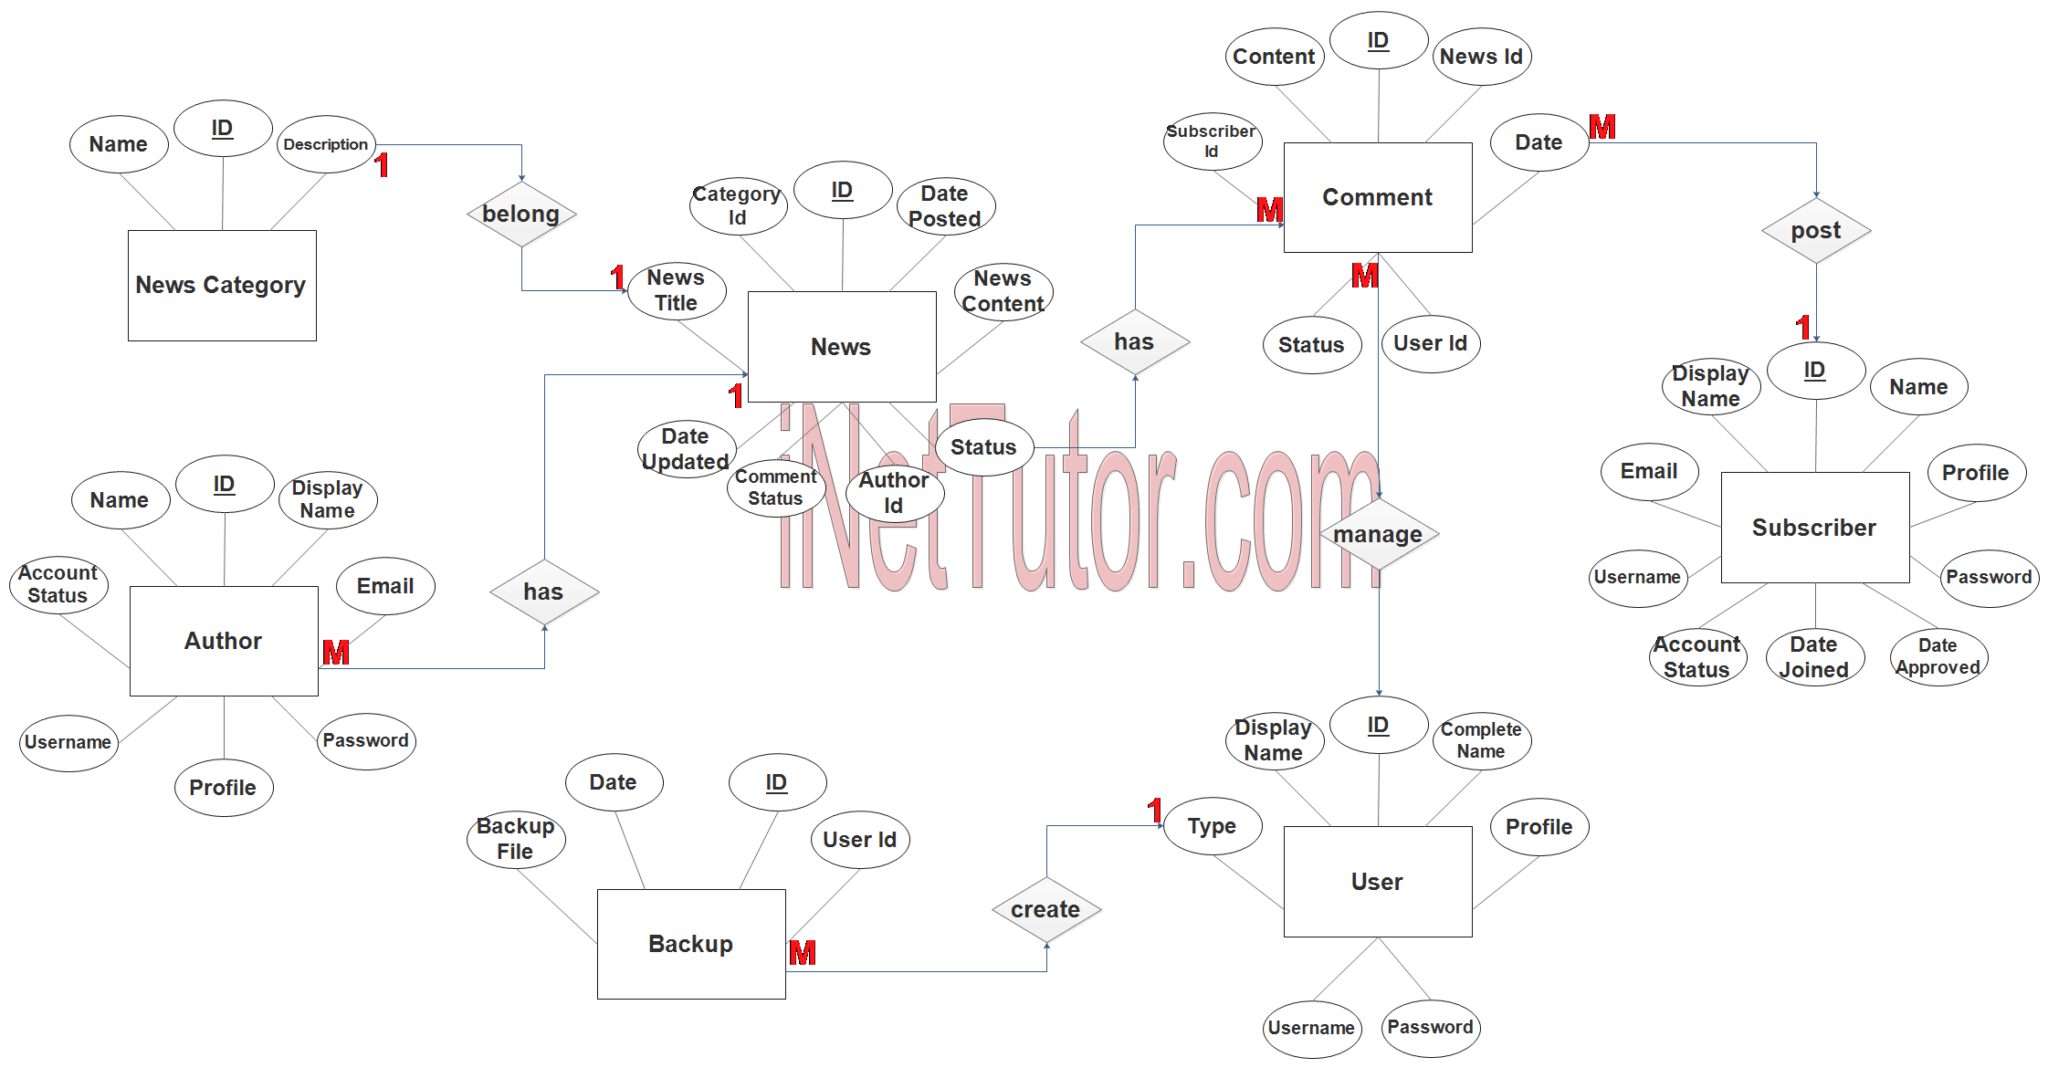 News Portal Application ER Diagram Step 3 Complete ERD 